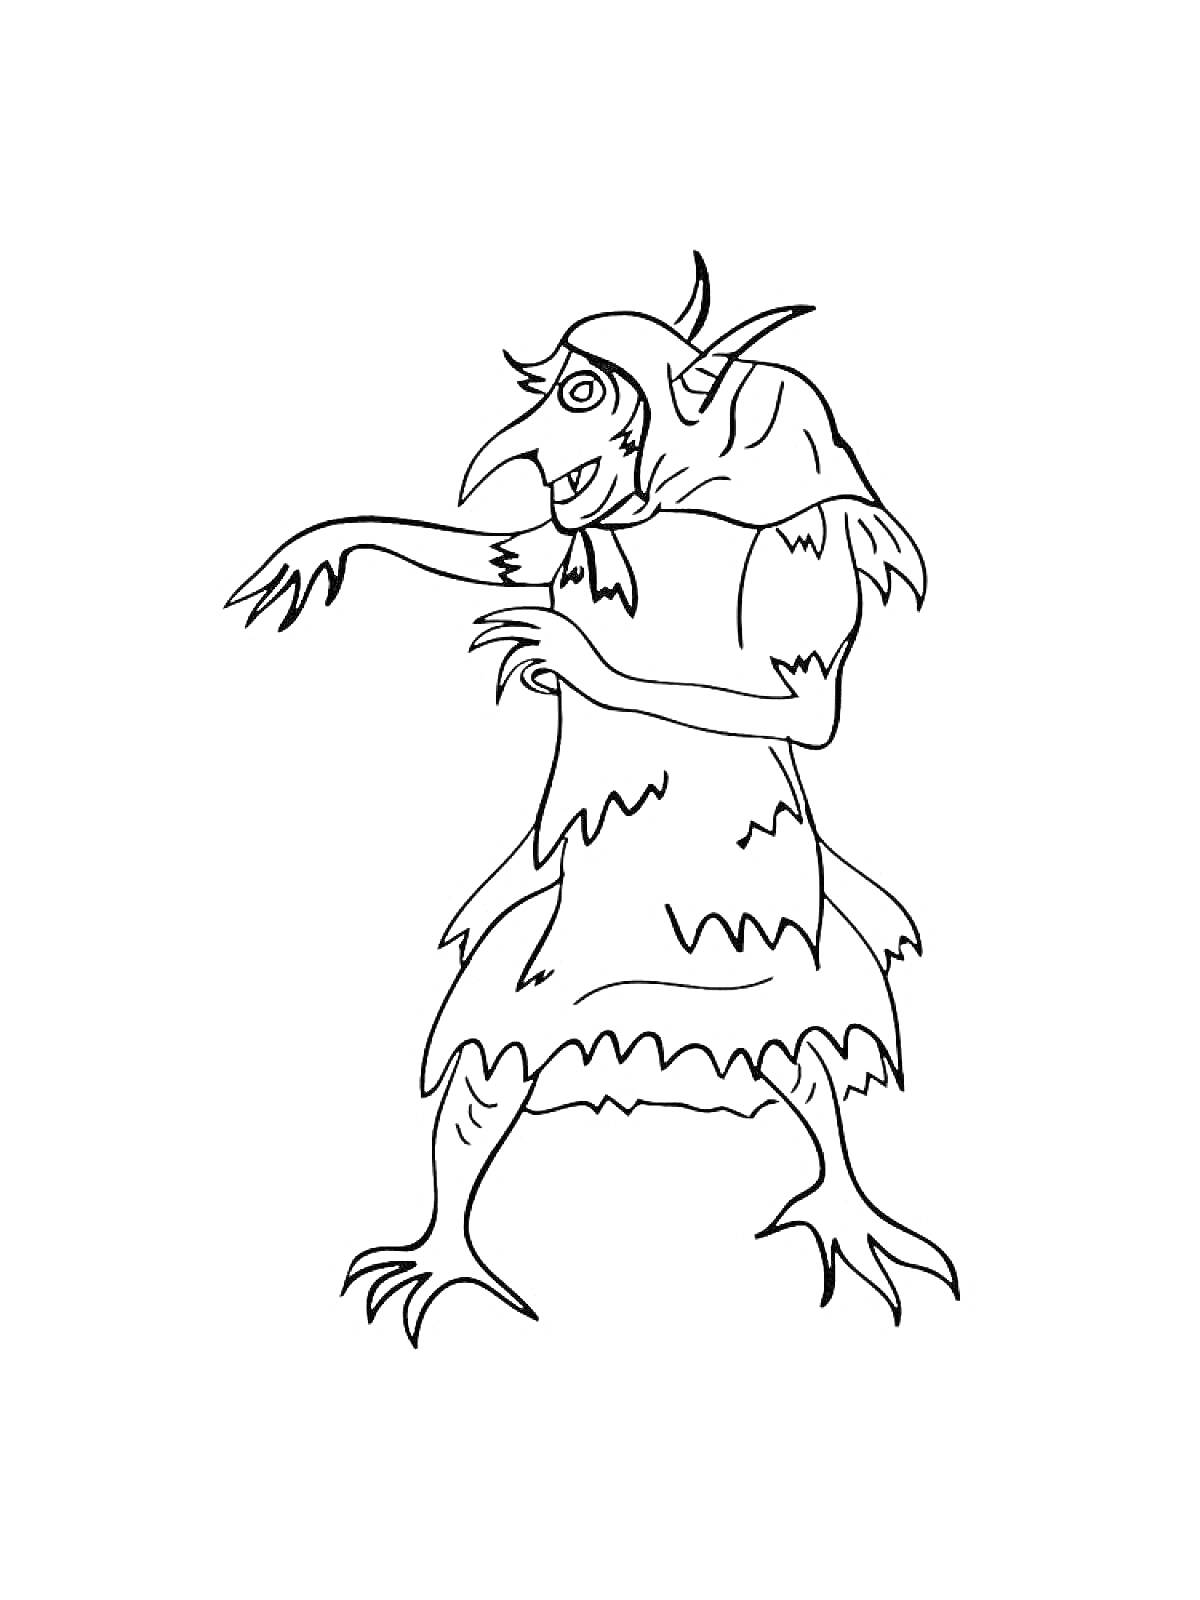 Кикимора в рваном халате с острыми когтями и длинным носом, с рогами на голове